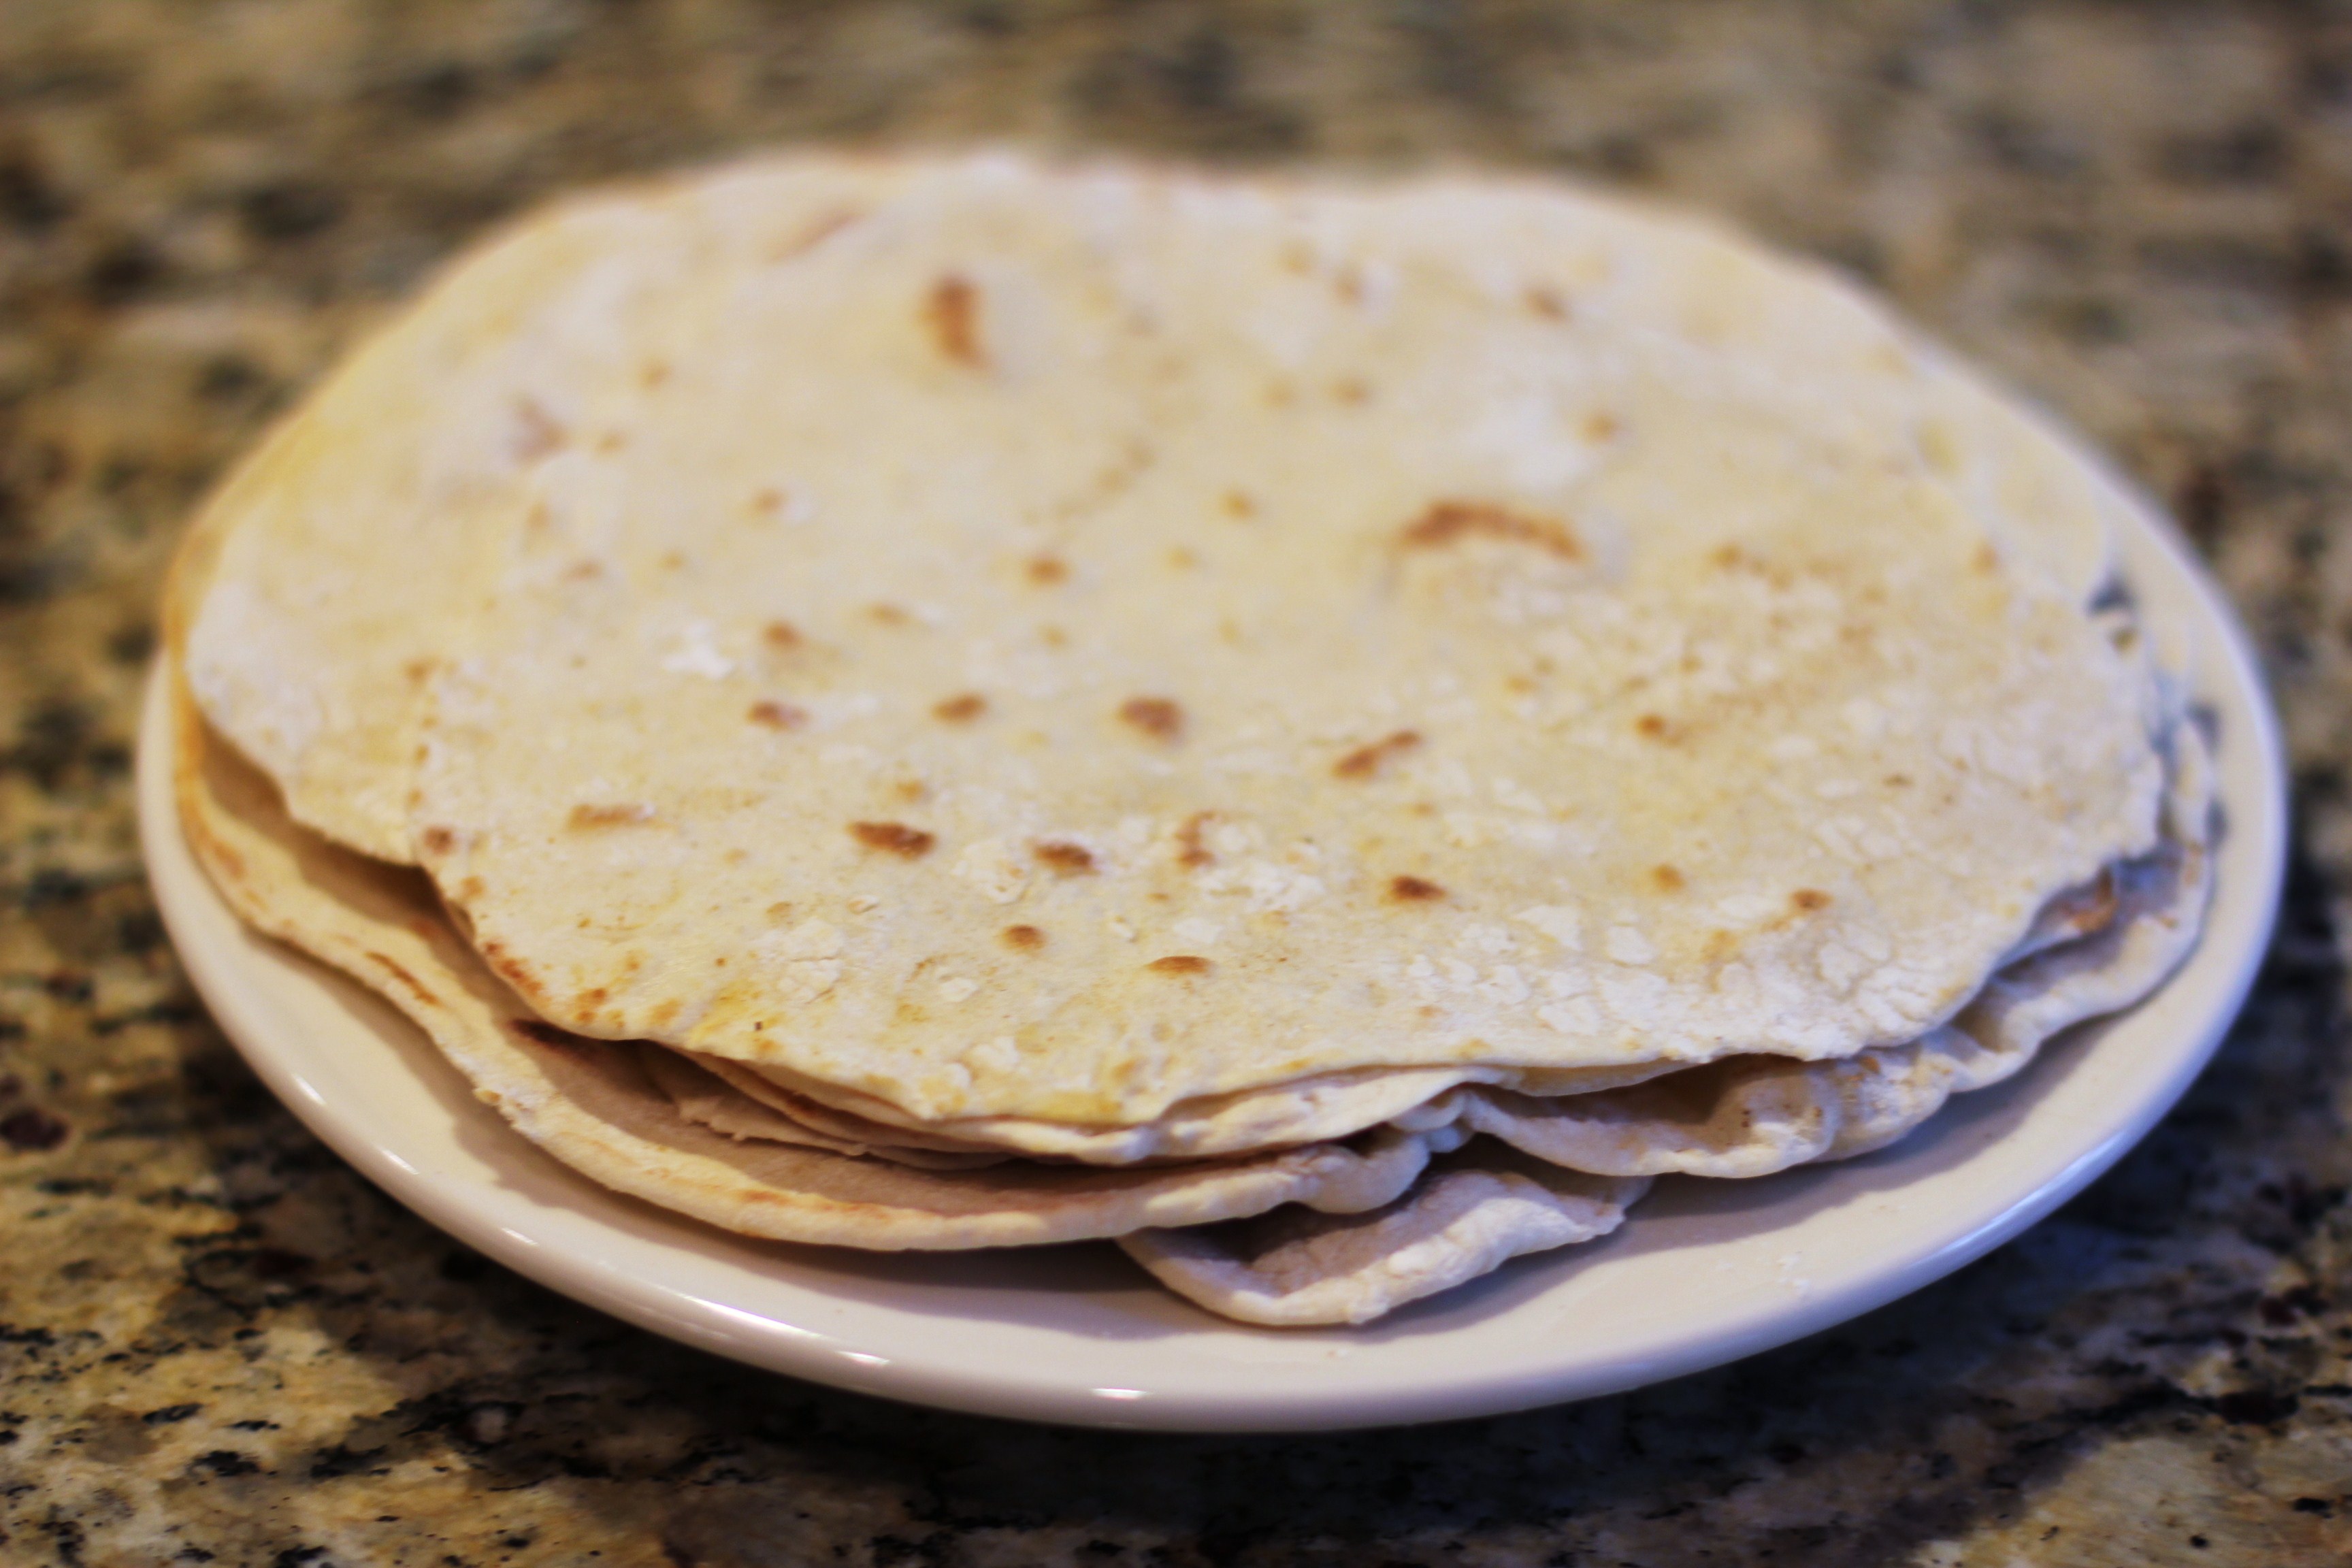 Recipe – How to Make Homemade Tortillas